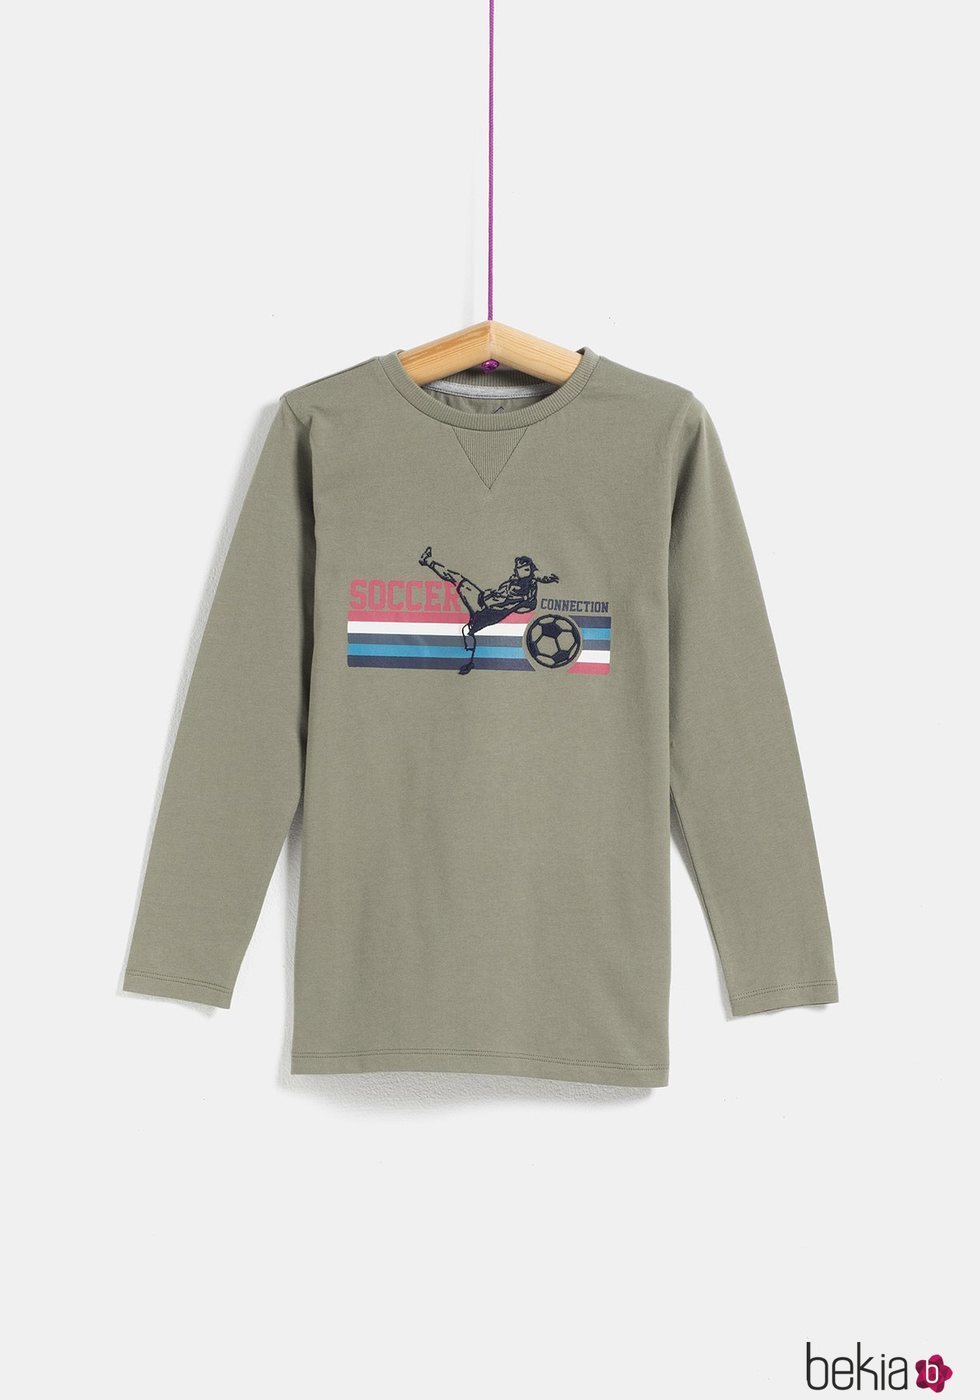 Camiseta caqui 'Soccer' de niño de la colección 'I-O' de Carrefour y TEX para otoño/invierno 2019